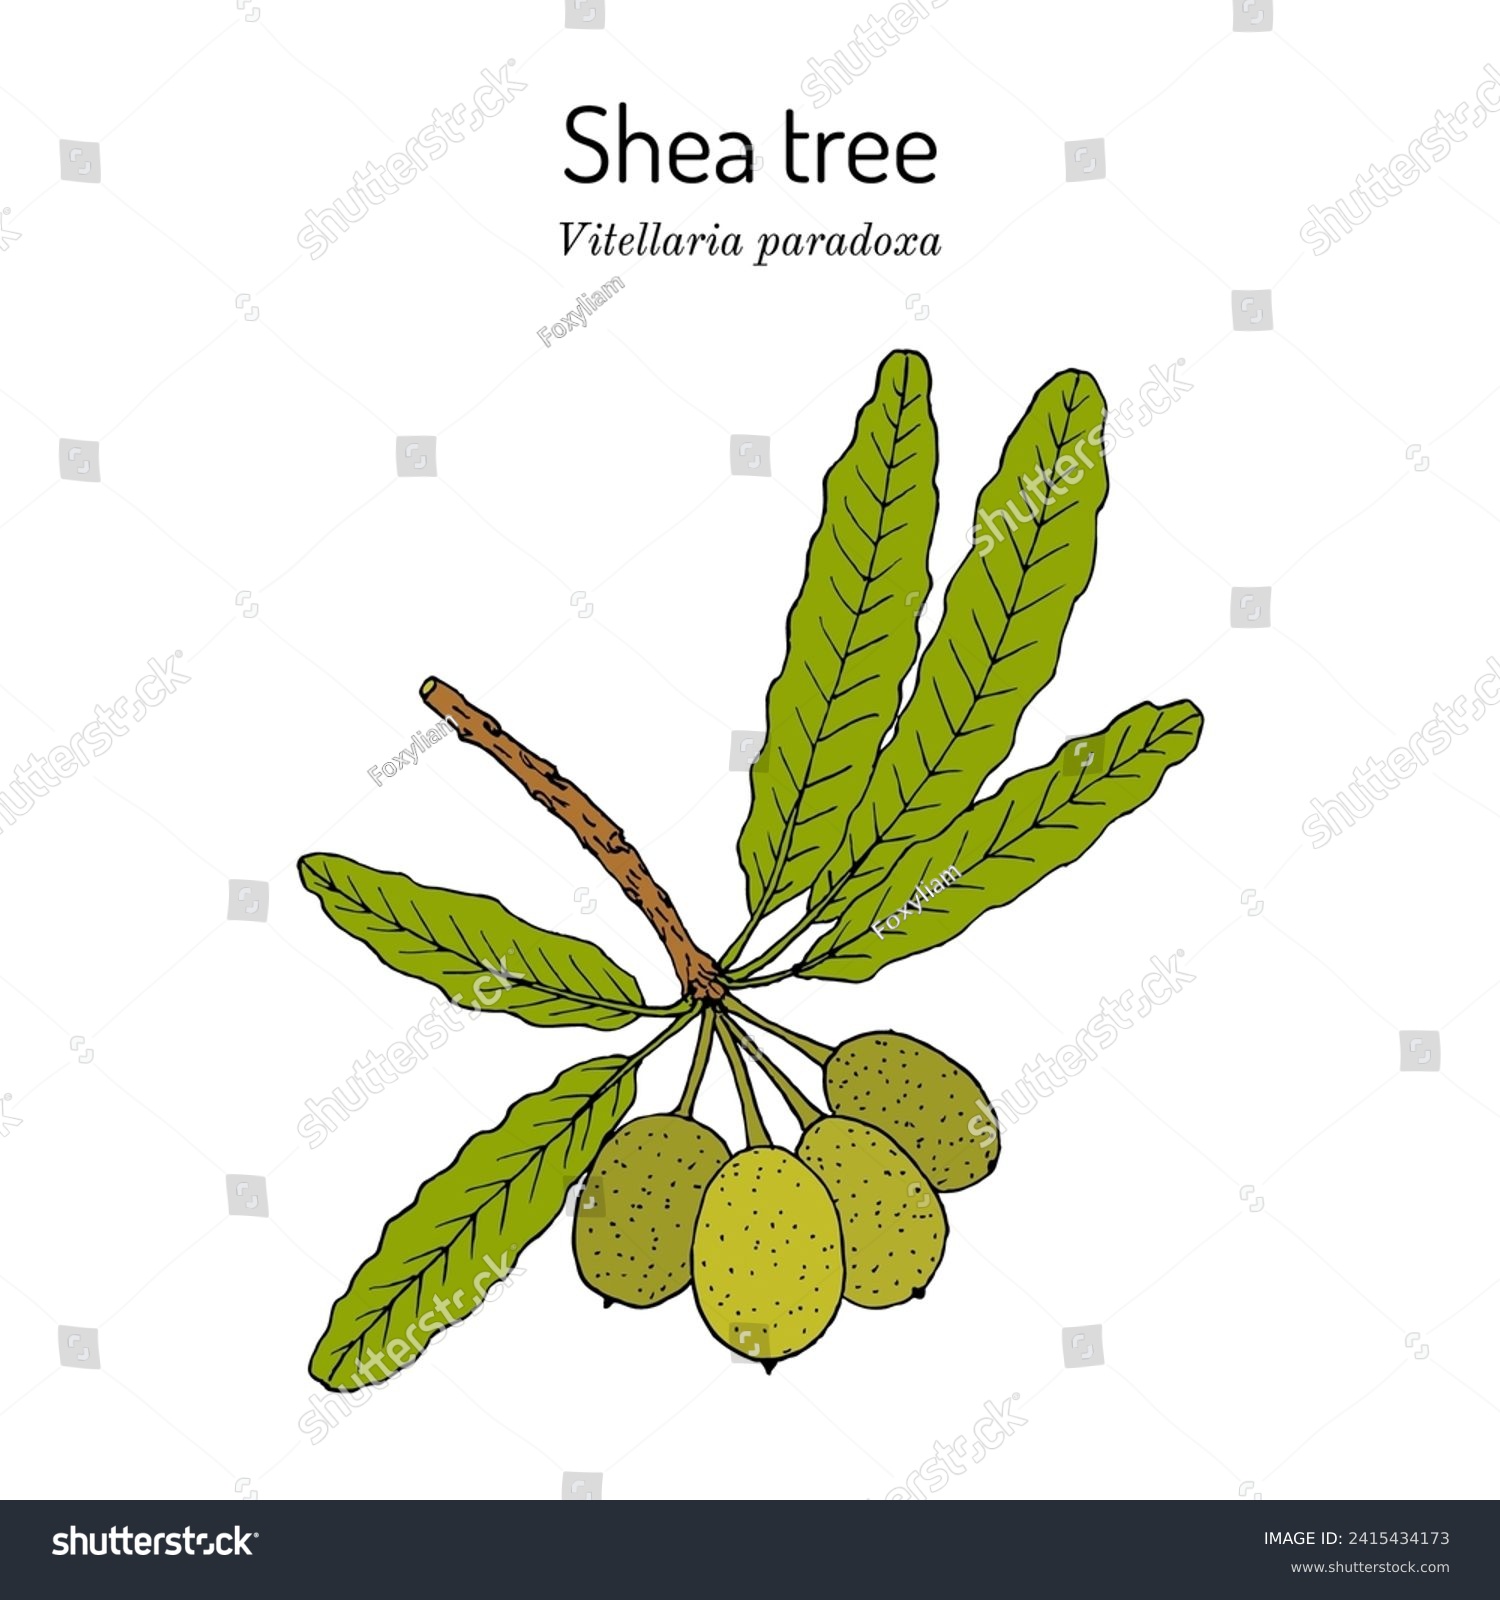 SVG of Shea tree, or vitellaria paradoxa, edible and medicinal plant. Hand drawn botanical vector illustration svg